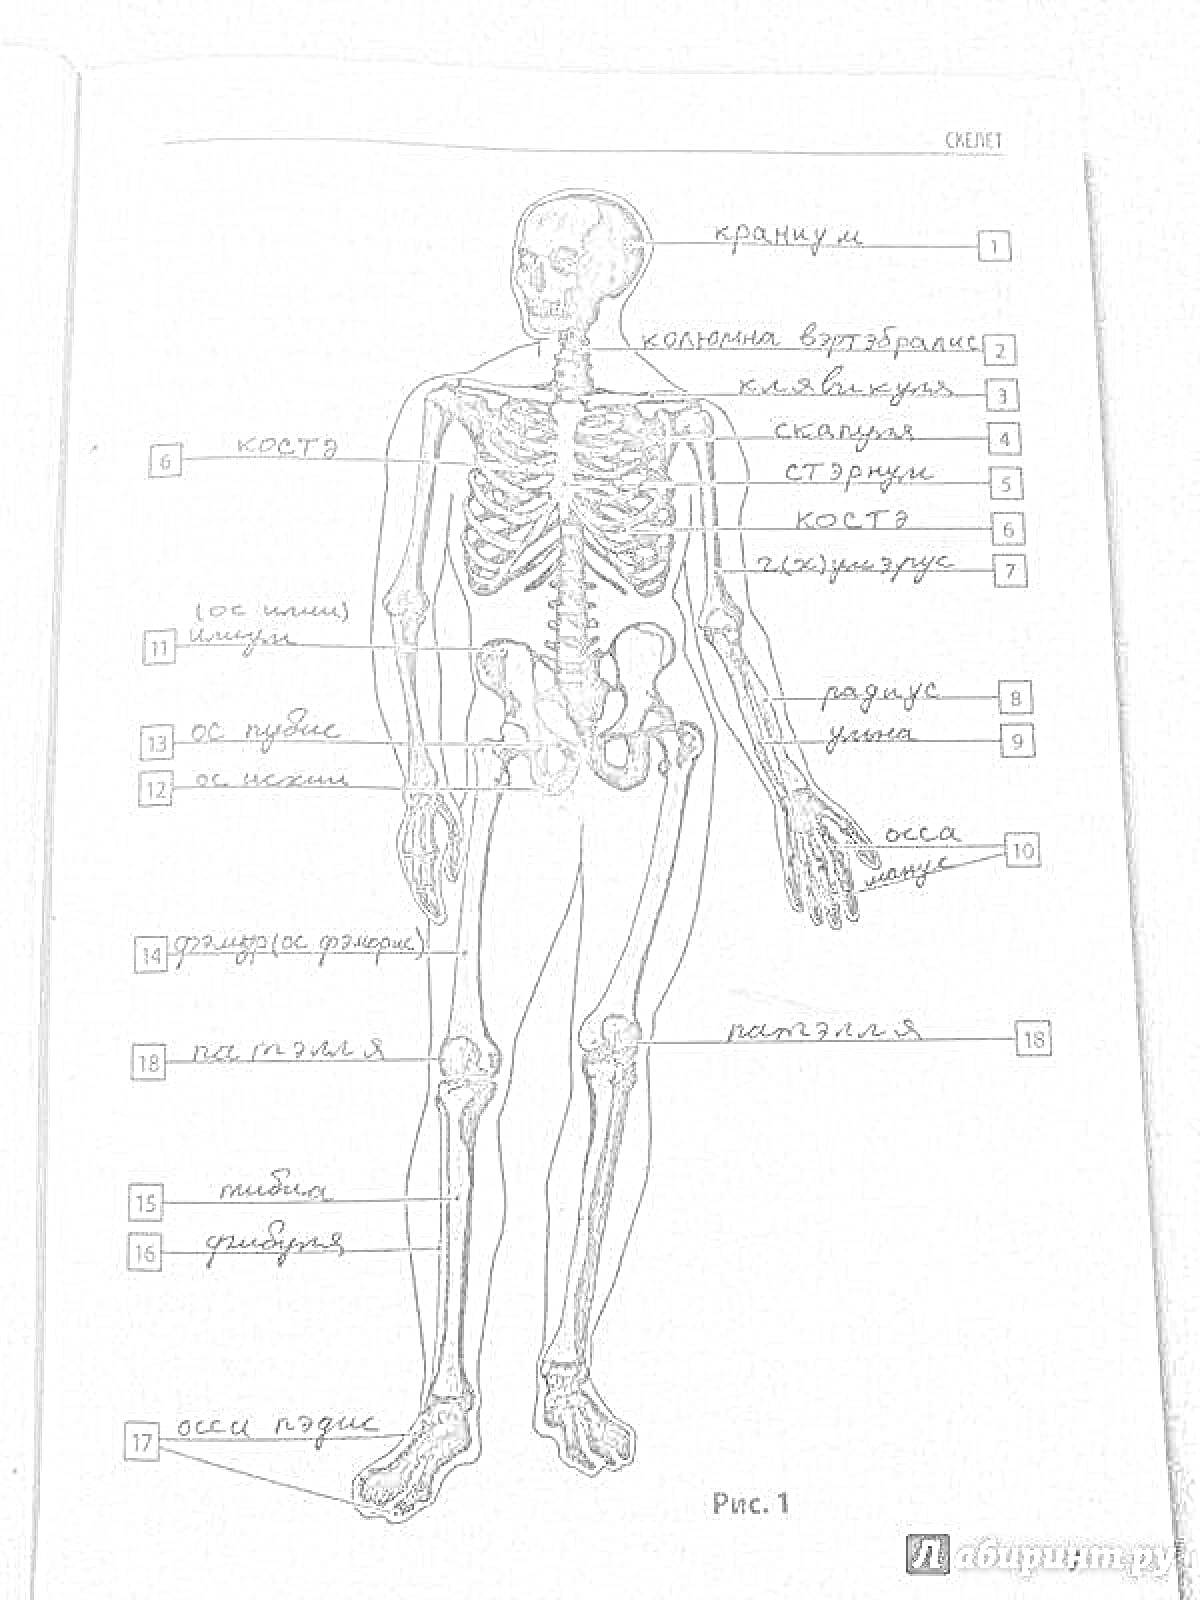 Схема скелета человека с анатомическими указателями - черепные кости, ключица, лопатка, грудина, ребра, позвоночник, тазовые кости, кисть руки, бедренная кость, коленная чашечка, голень, стопа.